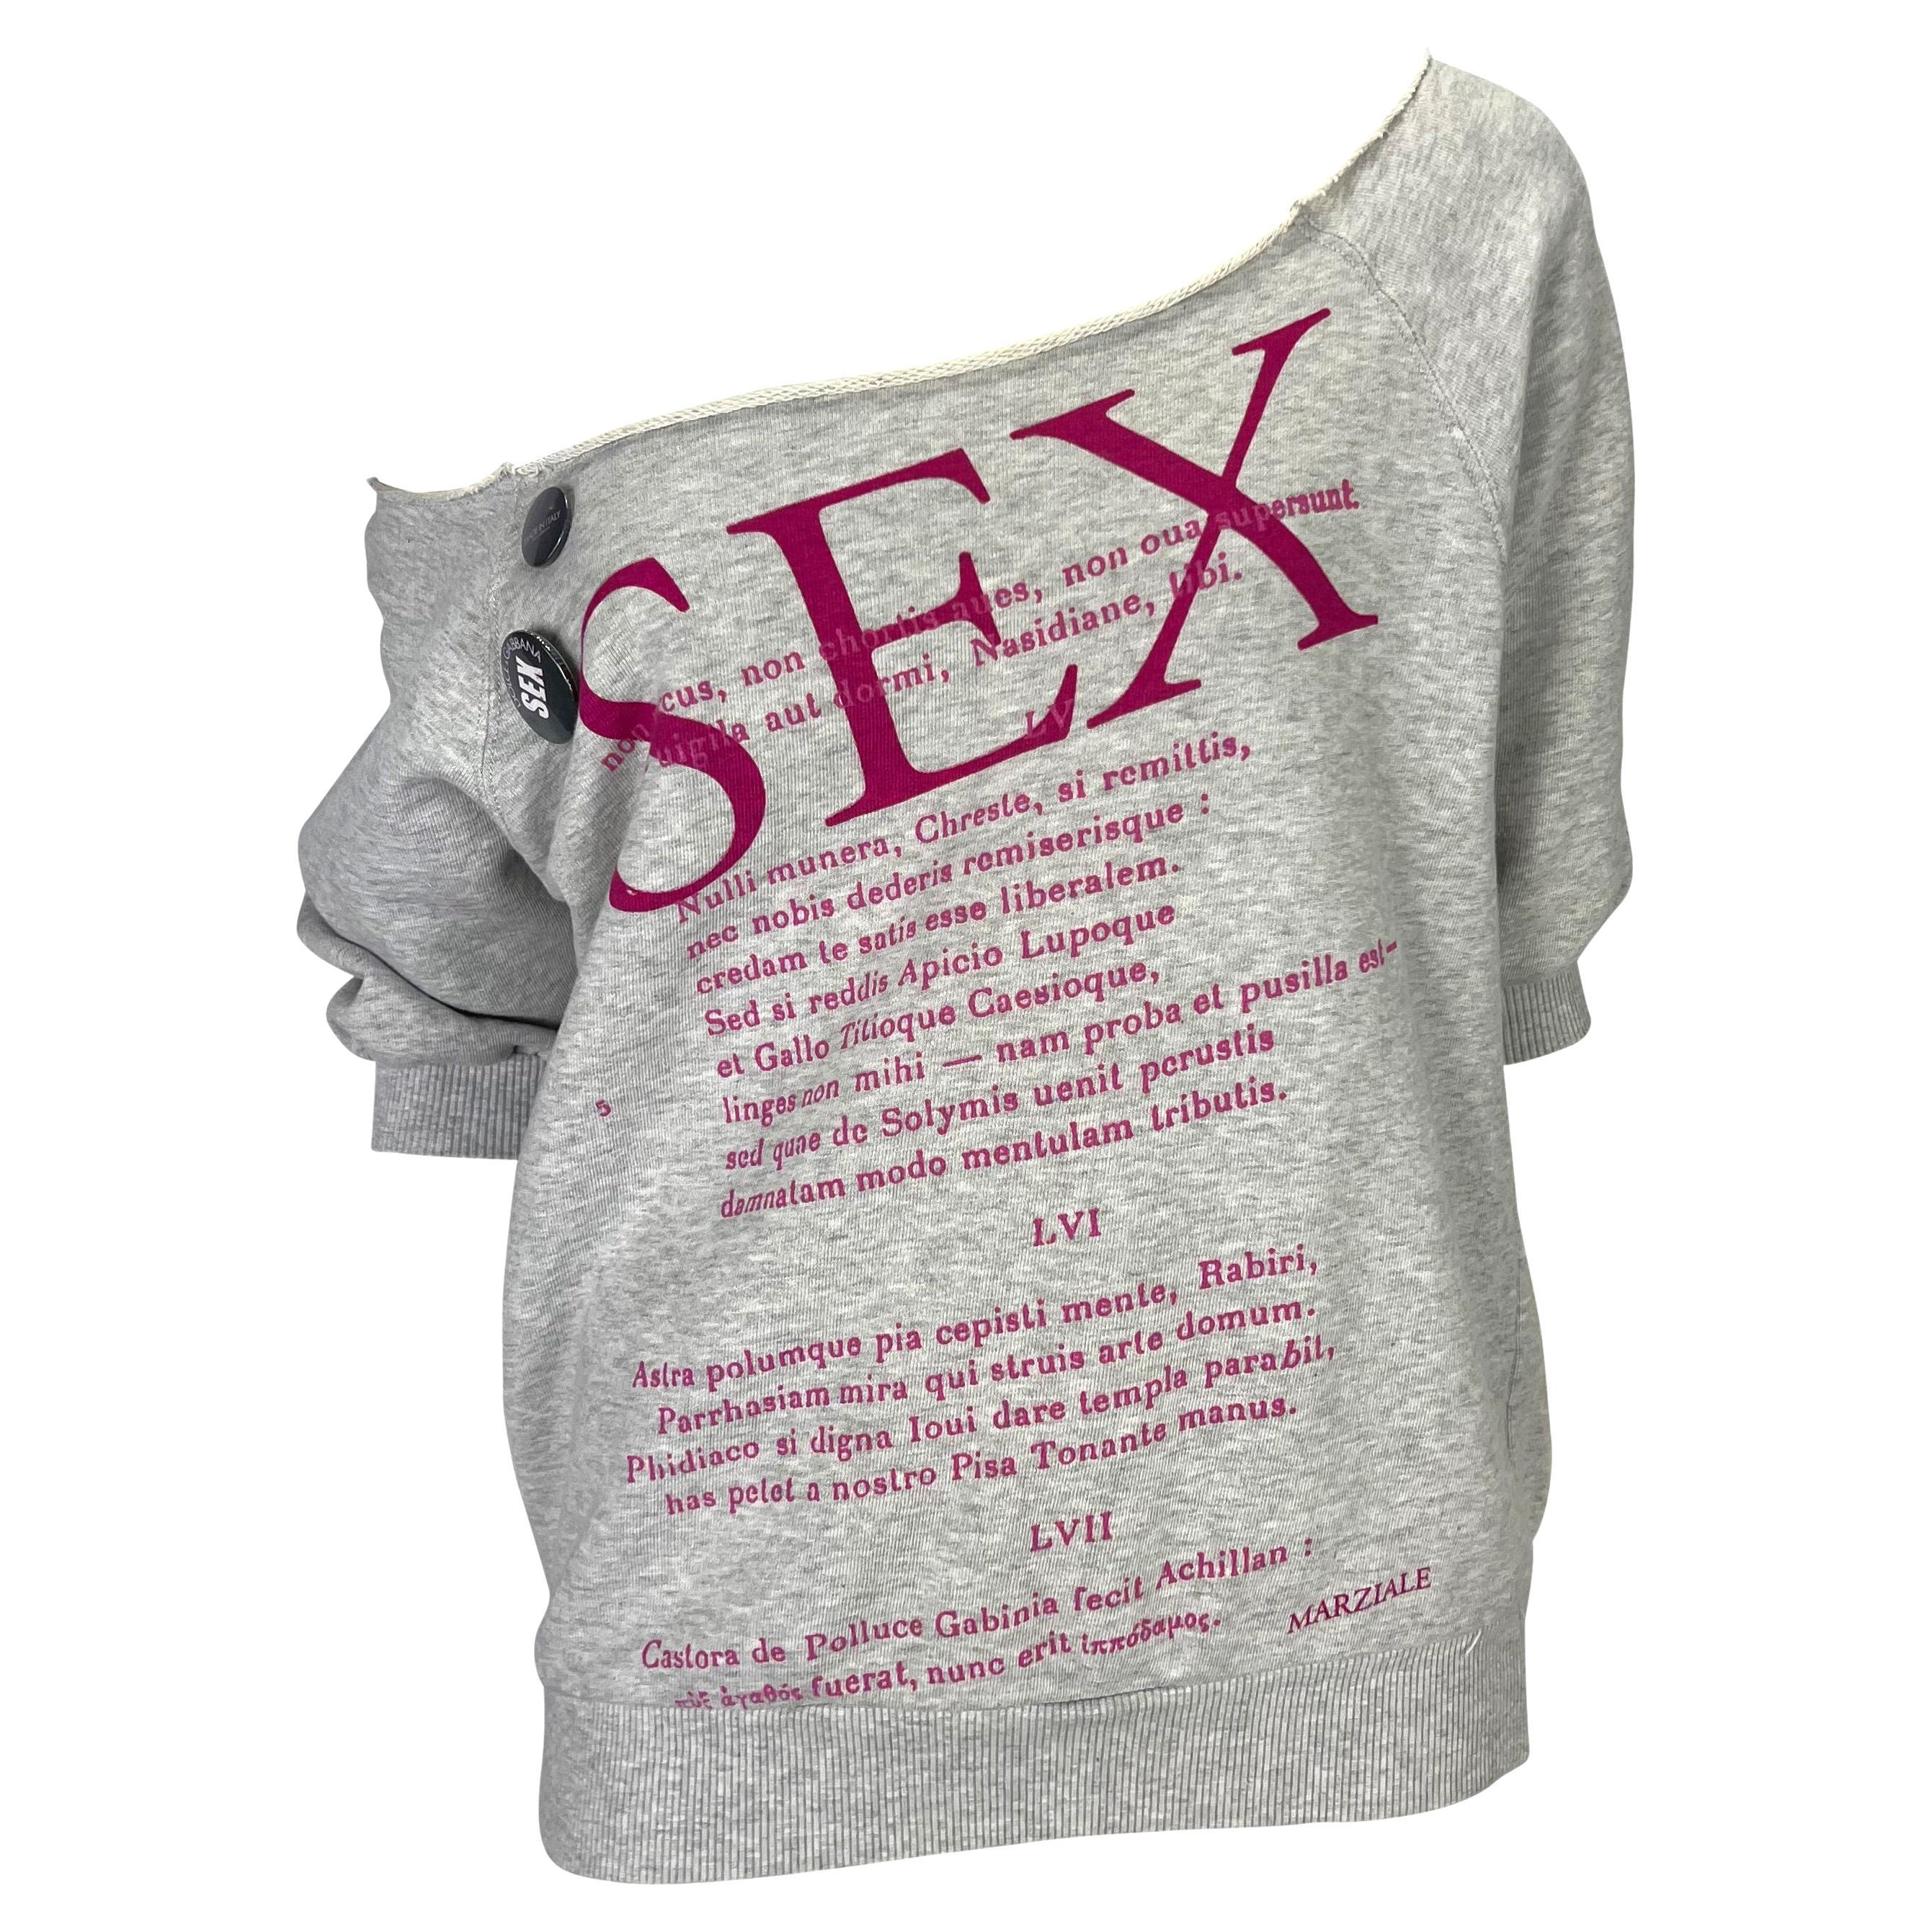 Pull-shirt court imprimé « Sex & Love » défilé Dolce & Gabbana, P/E 2003